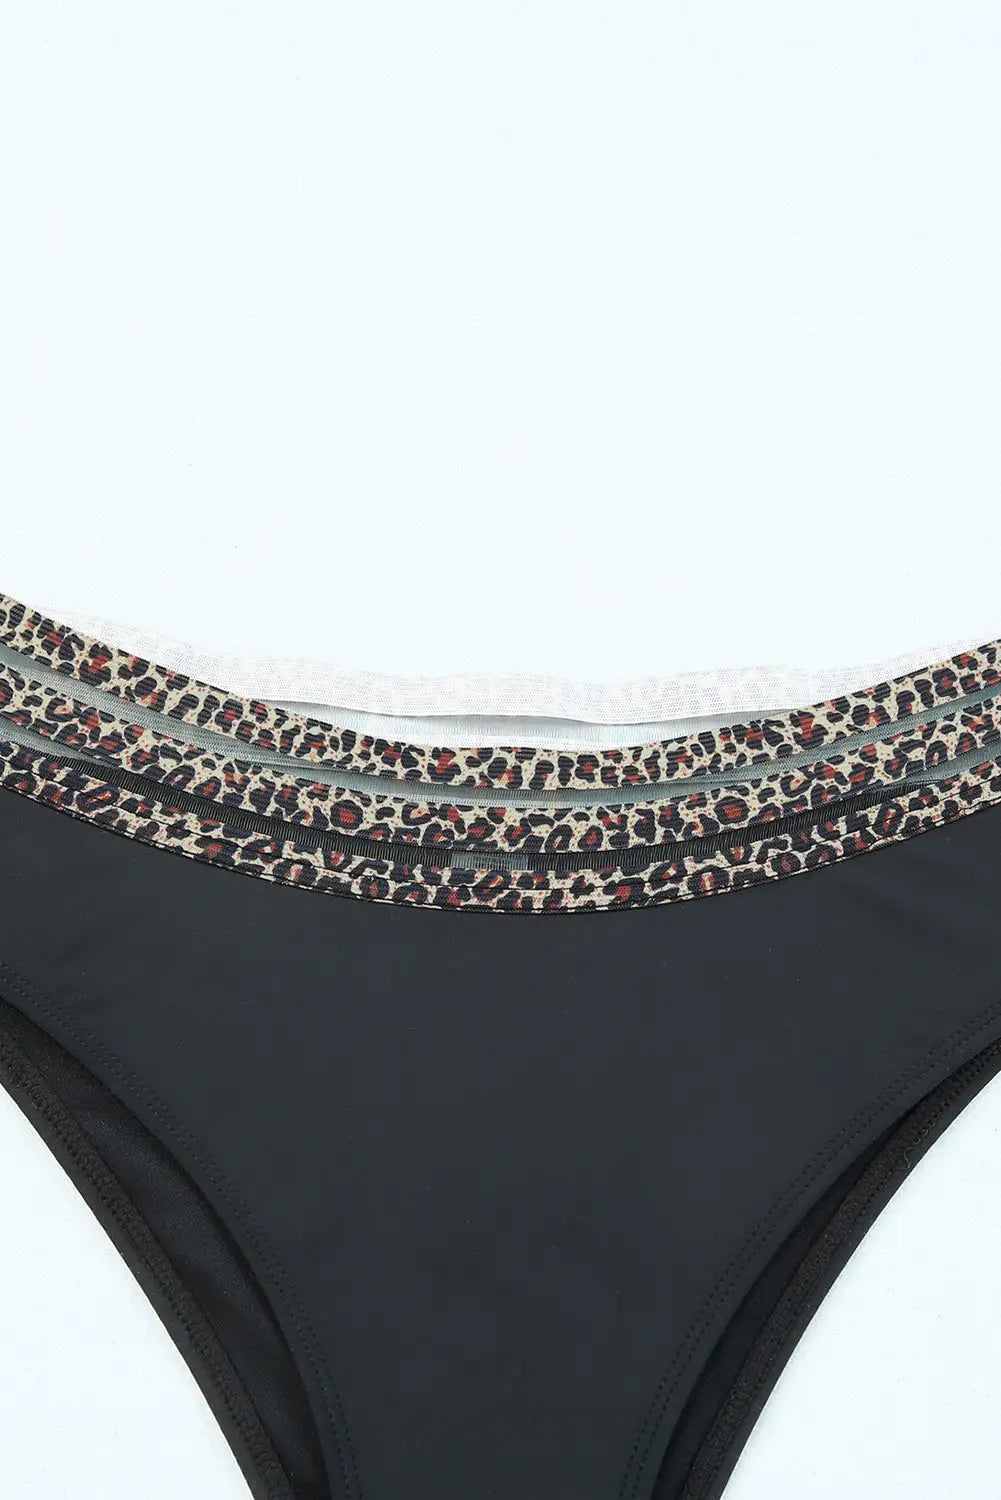 Black rose leopard mesh trim 2pcs bikini swimsuit - bikinis